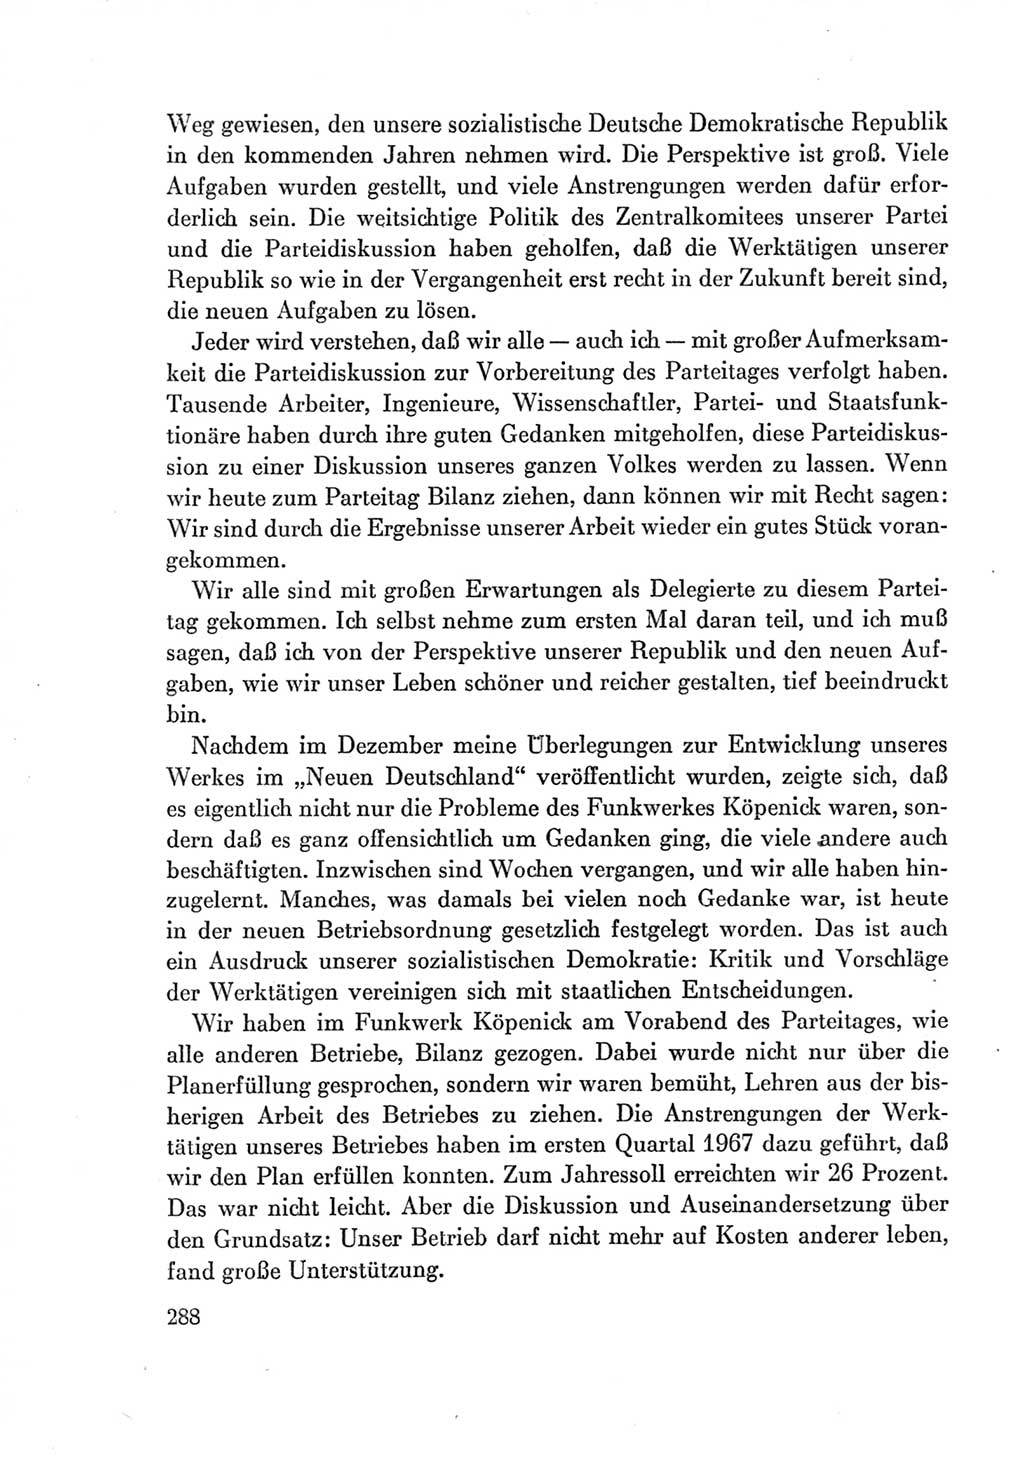 Protokoll der Verhandlungen des Ⅶ. Parteitages der Sozialistischen Einheitspartei Deutschlands (SED) [Deutsche Demokratische Republik (DDR)] 1967, Band Ⅰ, Seite 288 (Prot. Verh. Ⅶ. PT SED DDR 1967, Bd. Ⅰ, S. 288)